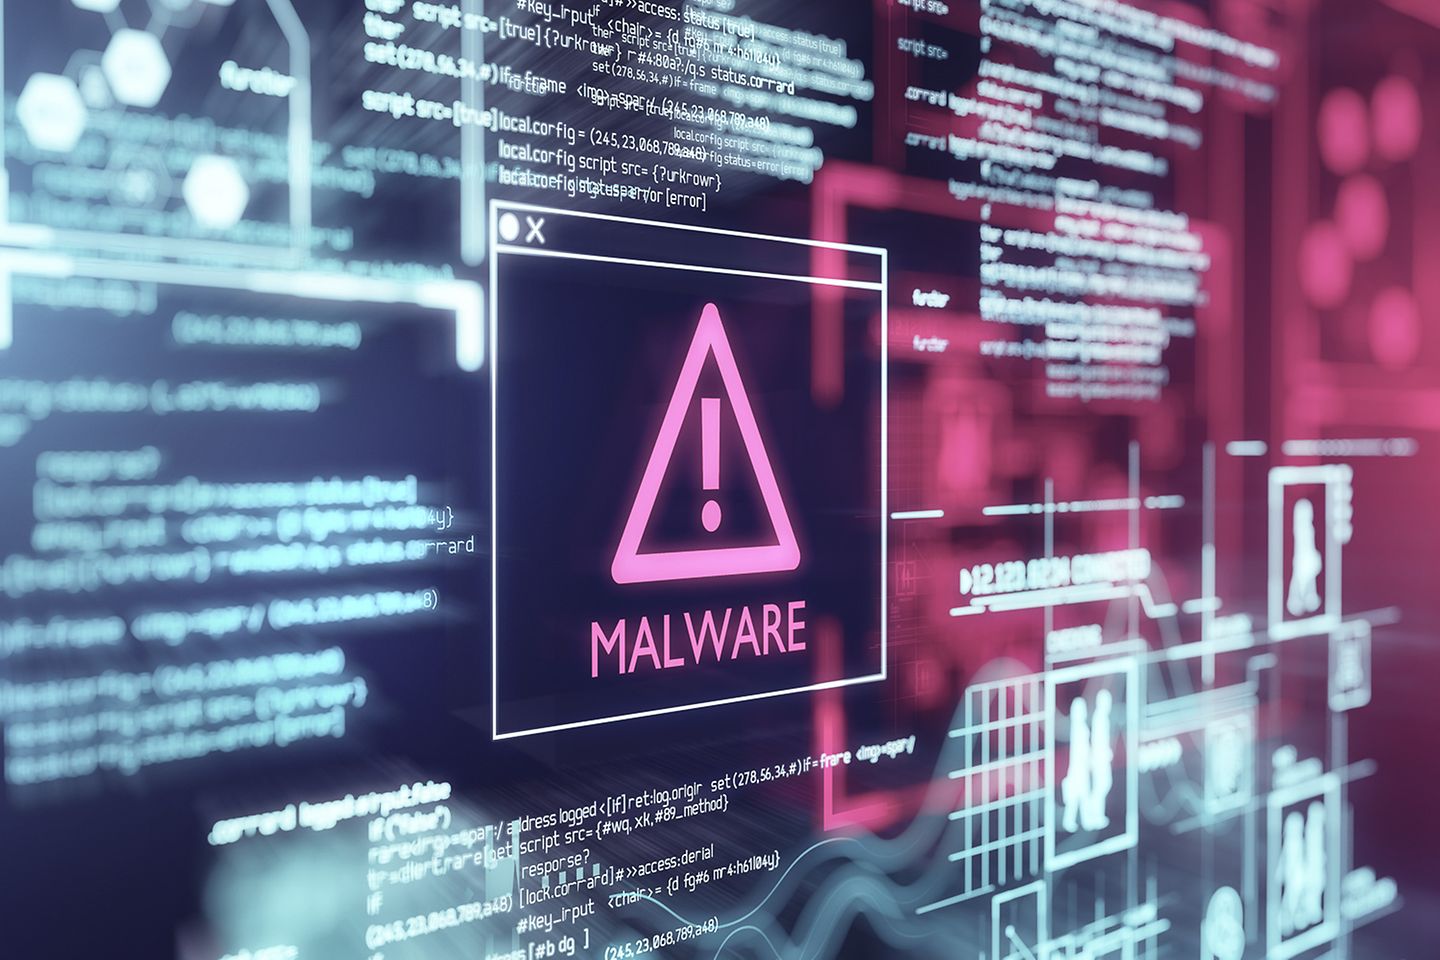 Écran avec un message d’alerte sur un malware identifié